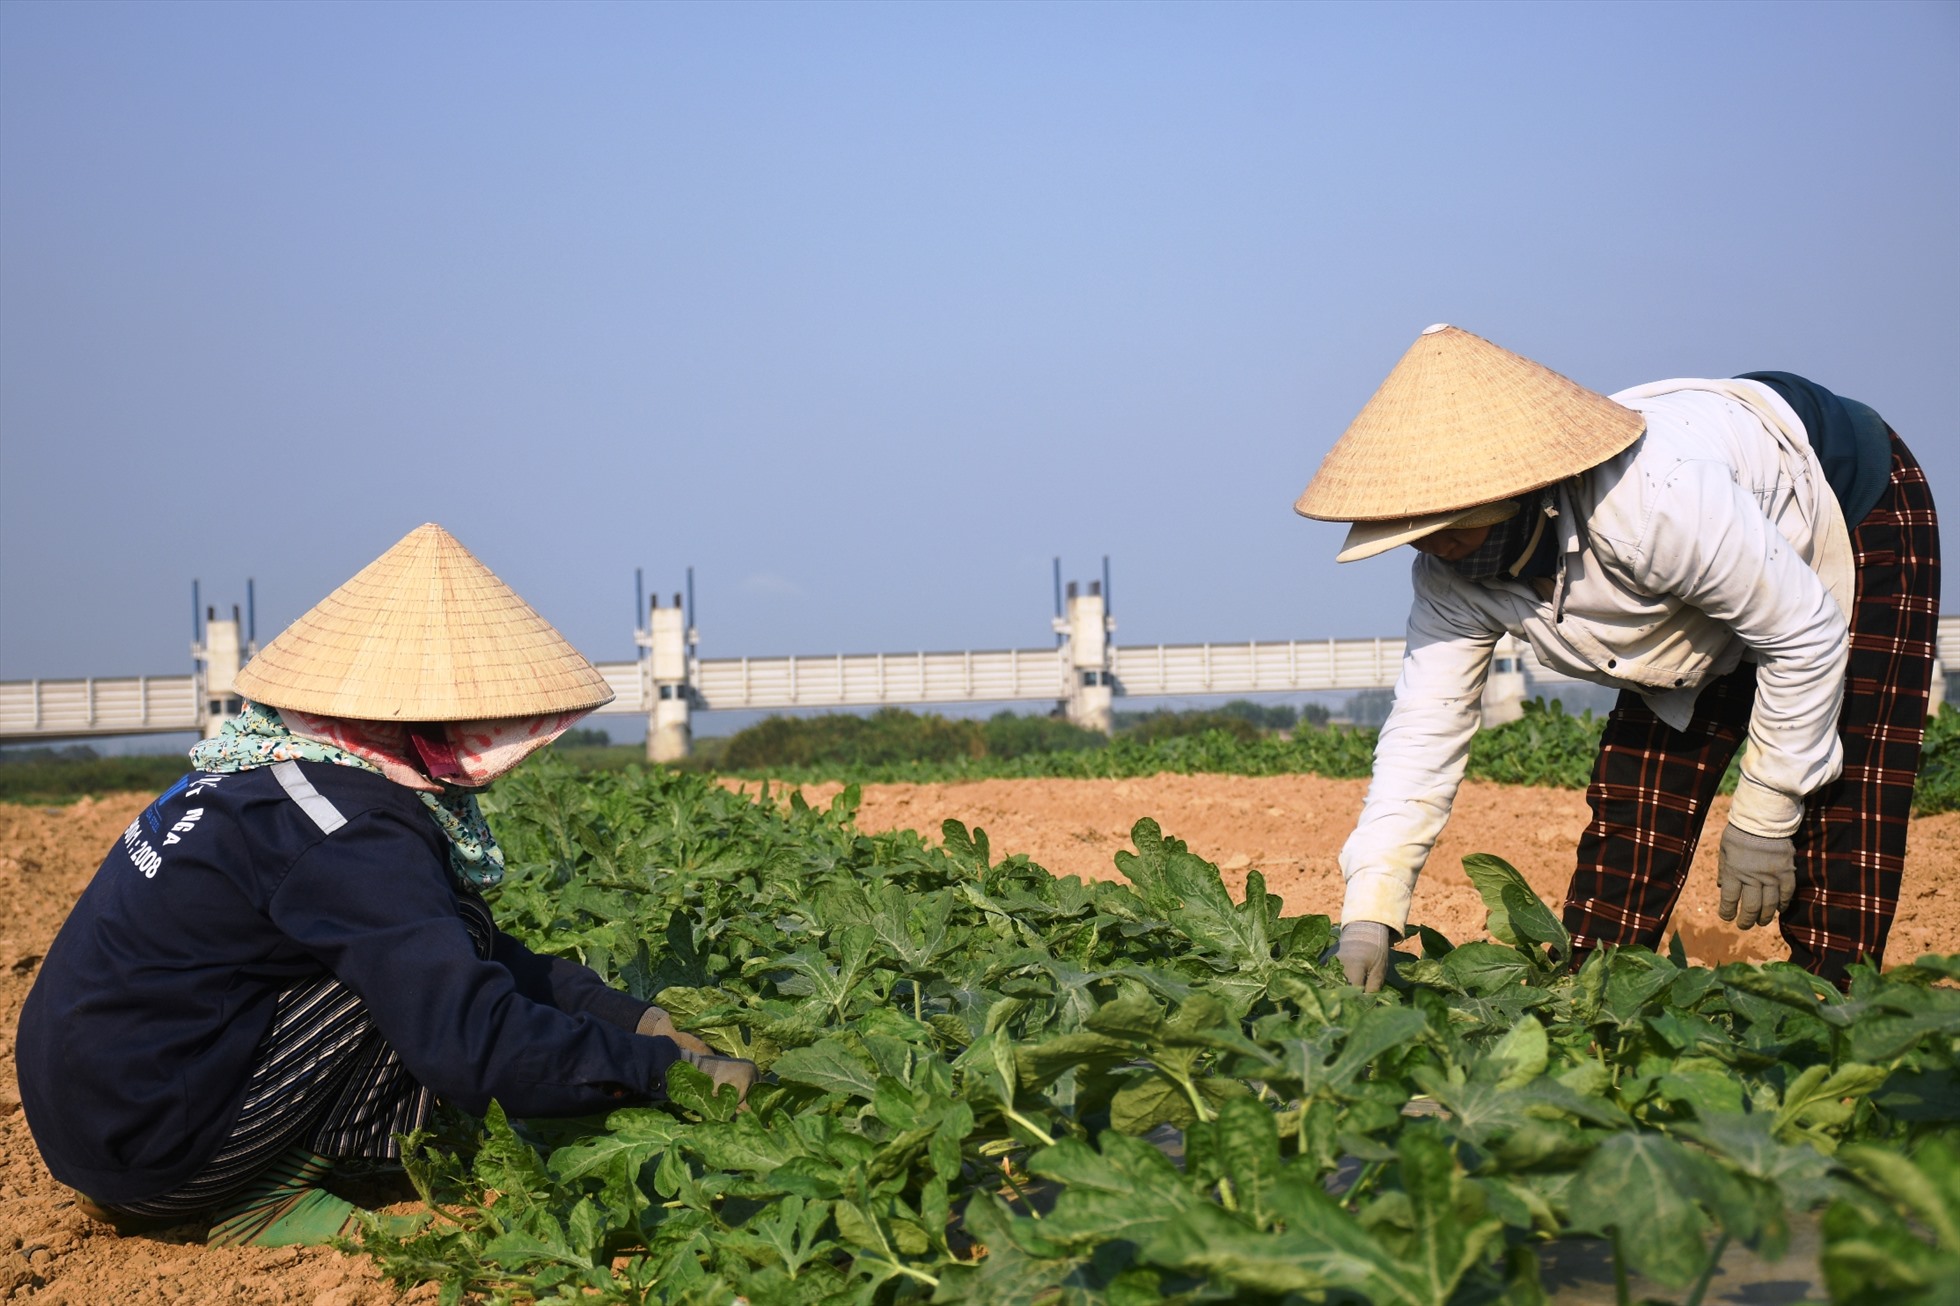 Nghề trồng dưa được ví như “đánh bạc” vì đầu ra bấp bênh, phụ thuộc rất lớn vào thị trường Trung Quốc vốn tiềm ẩn nhiều rủi ro. Ảnh: Ngọc Viên